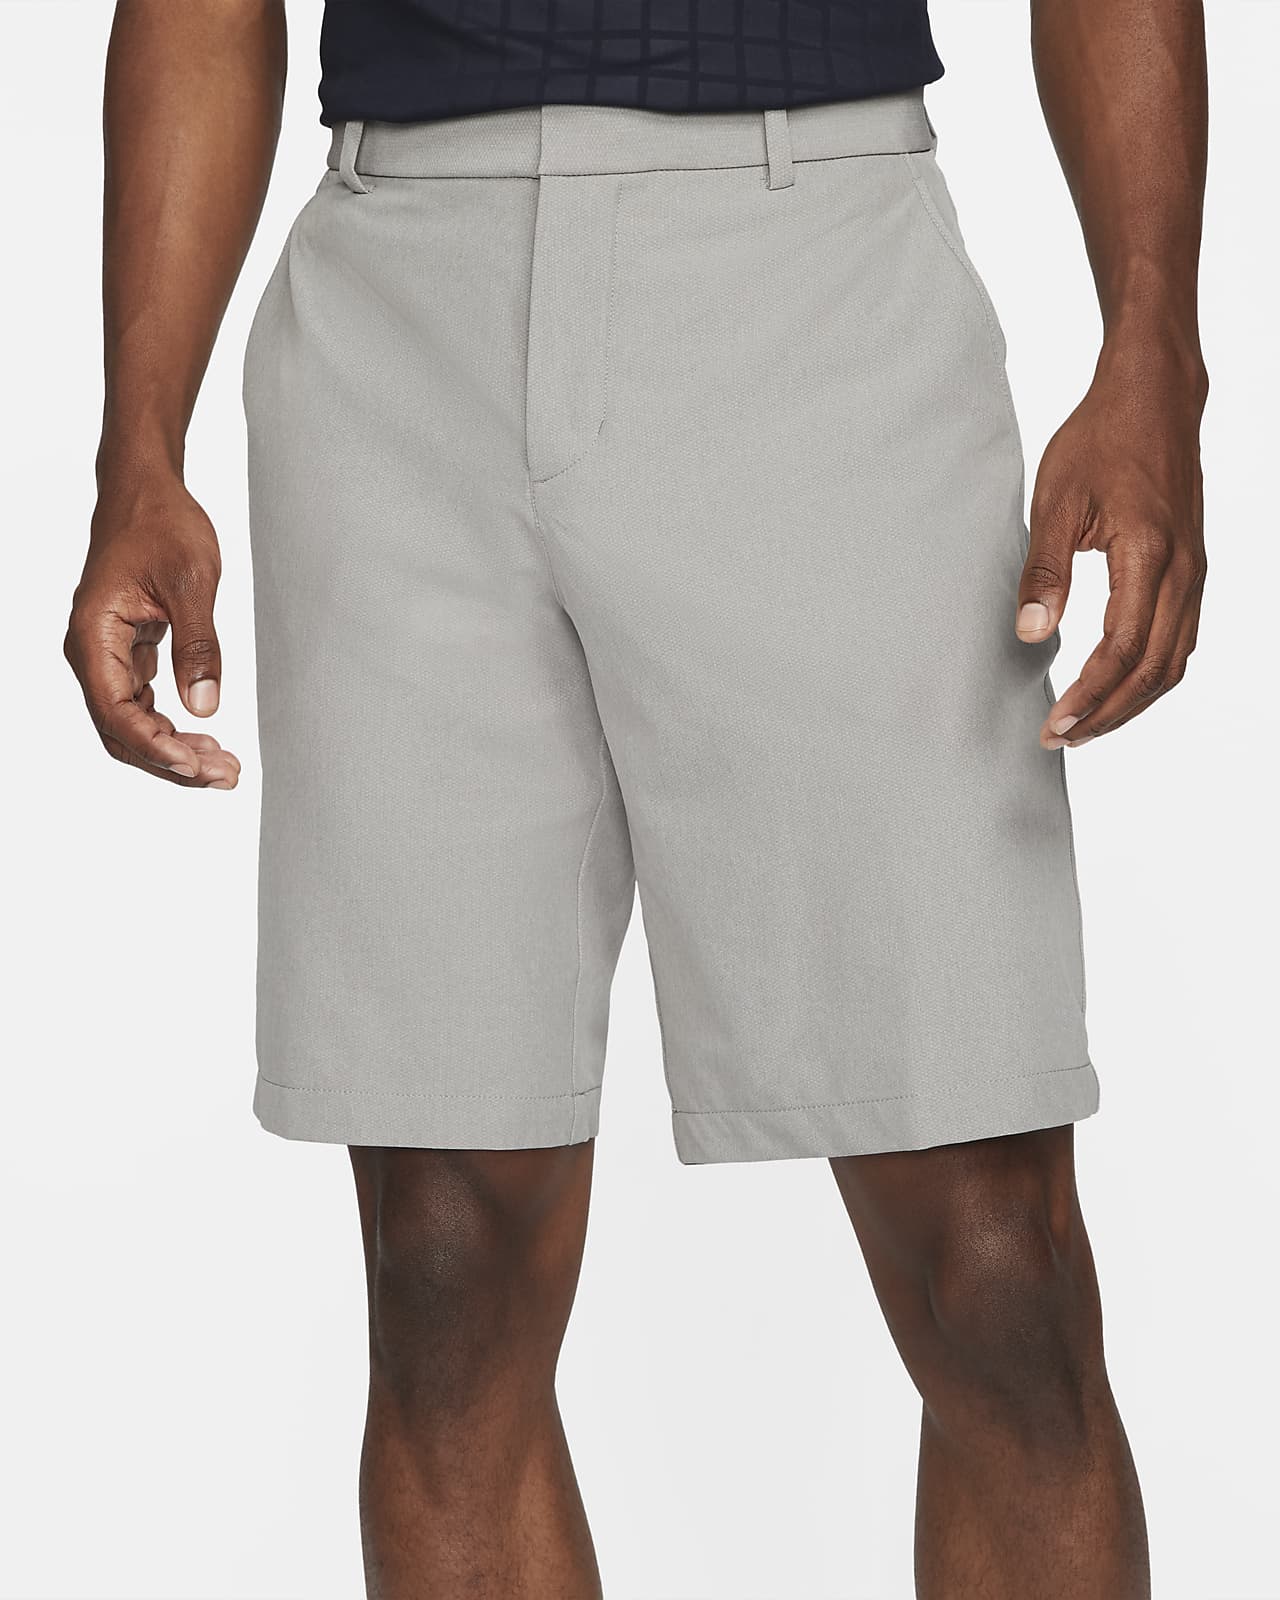 dri fit golf shorts